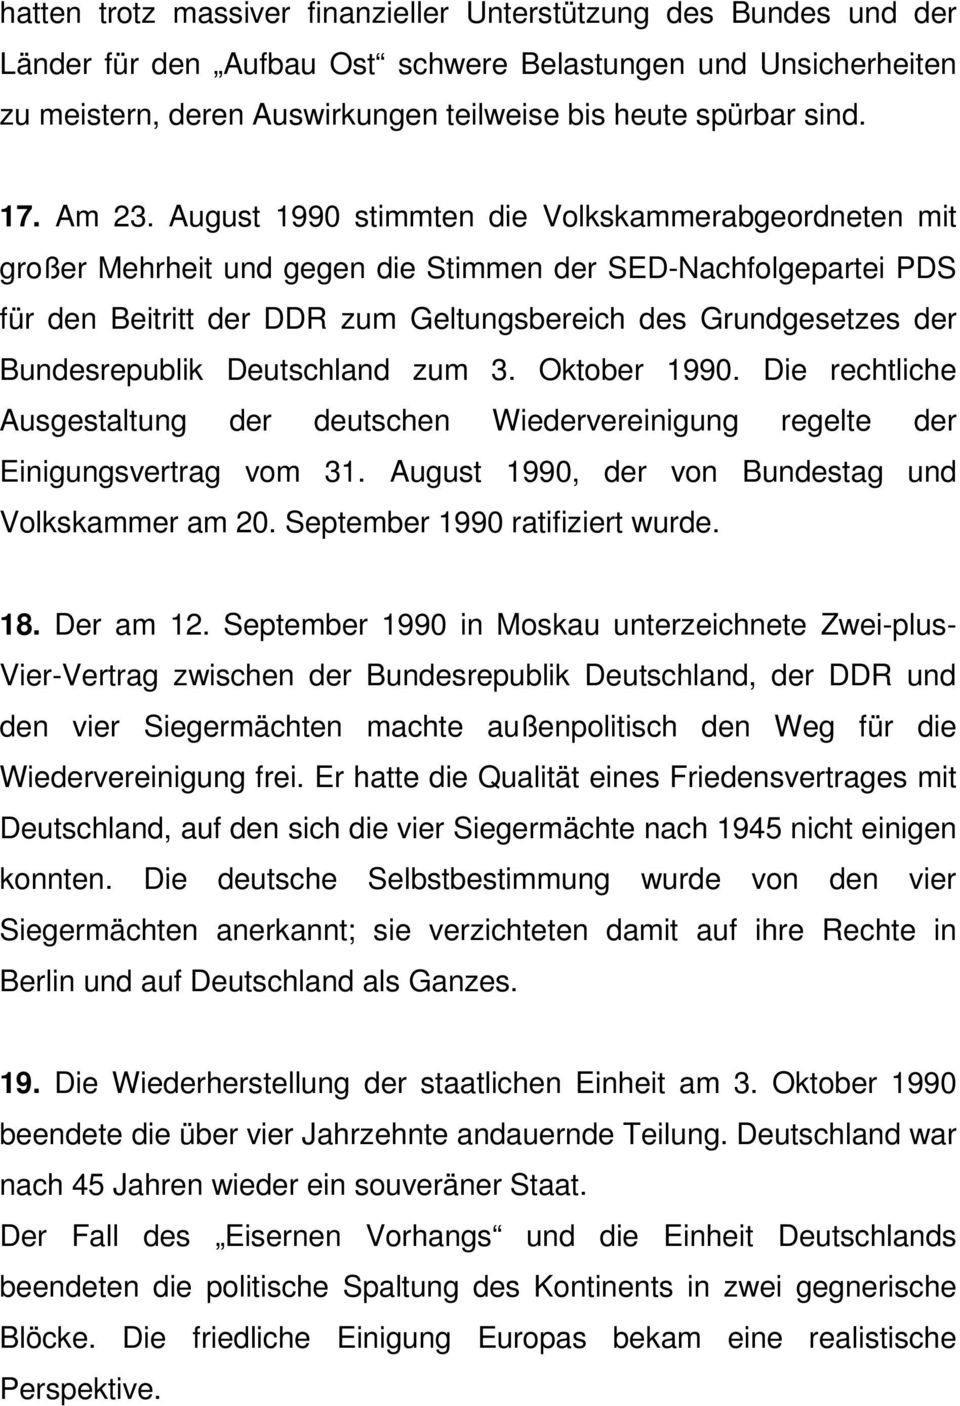 August 1990 stimmten die Volkskammerabgeordneten mit großer Mehrheit und gegen die Stimmen der SED-Nachfolgepartei PDS für den Beitritt der DDR zum Geltungsbereich des Grundgesetzes der